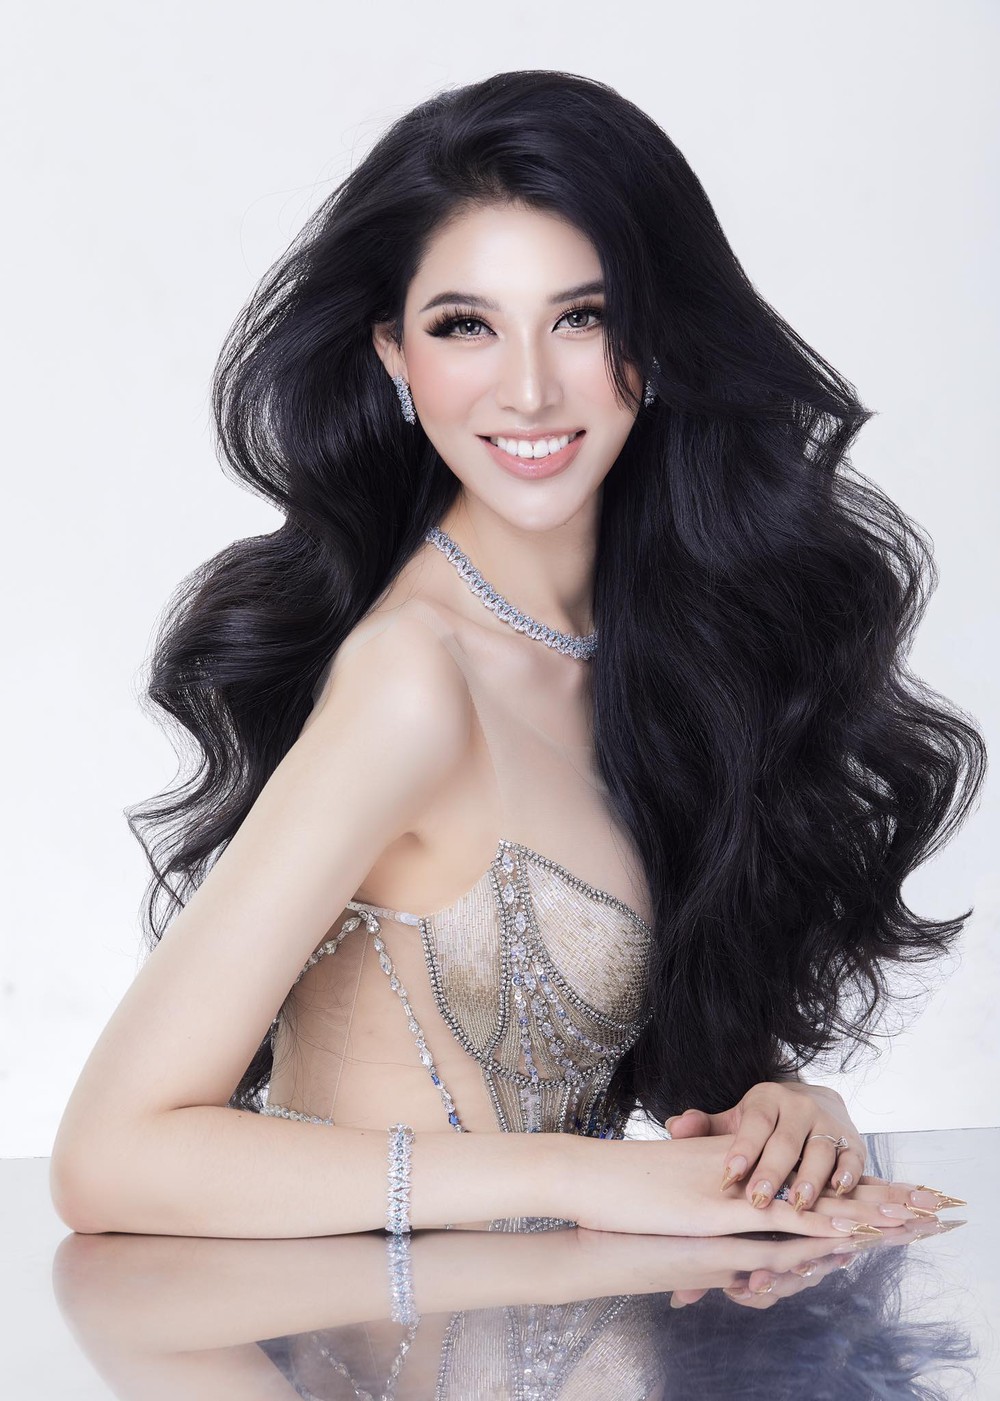 Phỏng vấn nóng Dịu Thảo trước Chung kết Miss International Queen: Tôi muốn mang vương miện về - Ảnh 1.